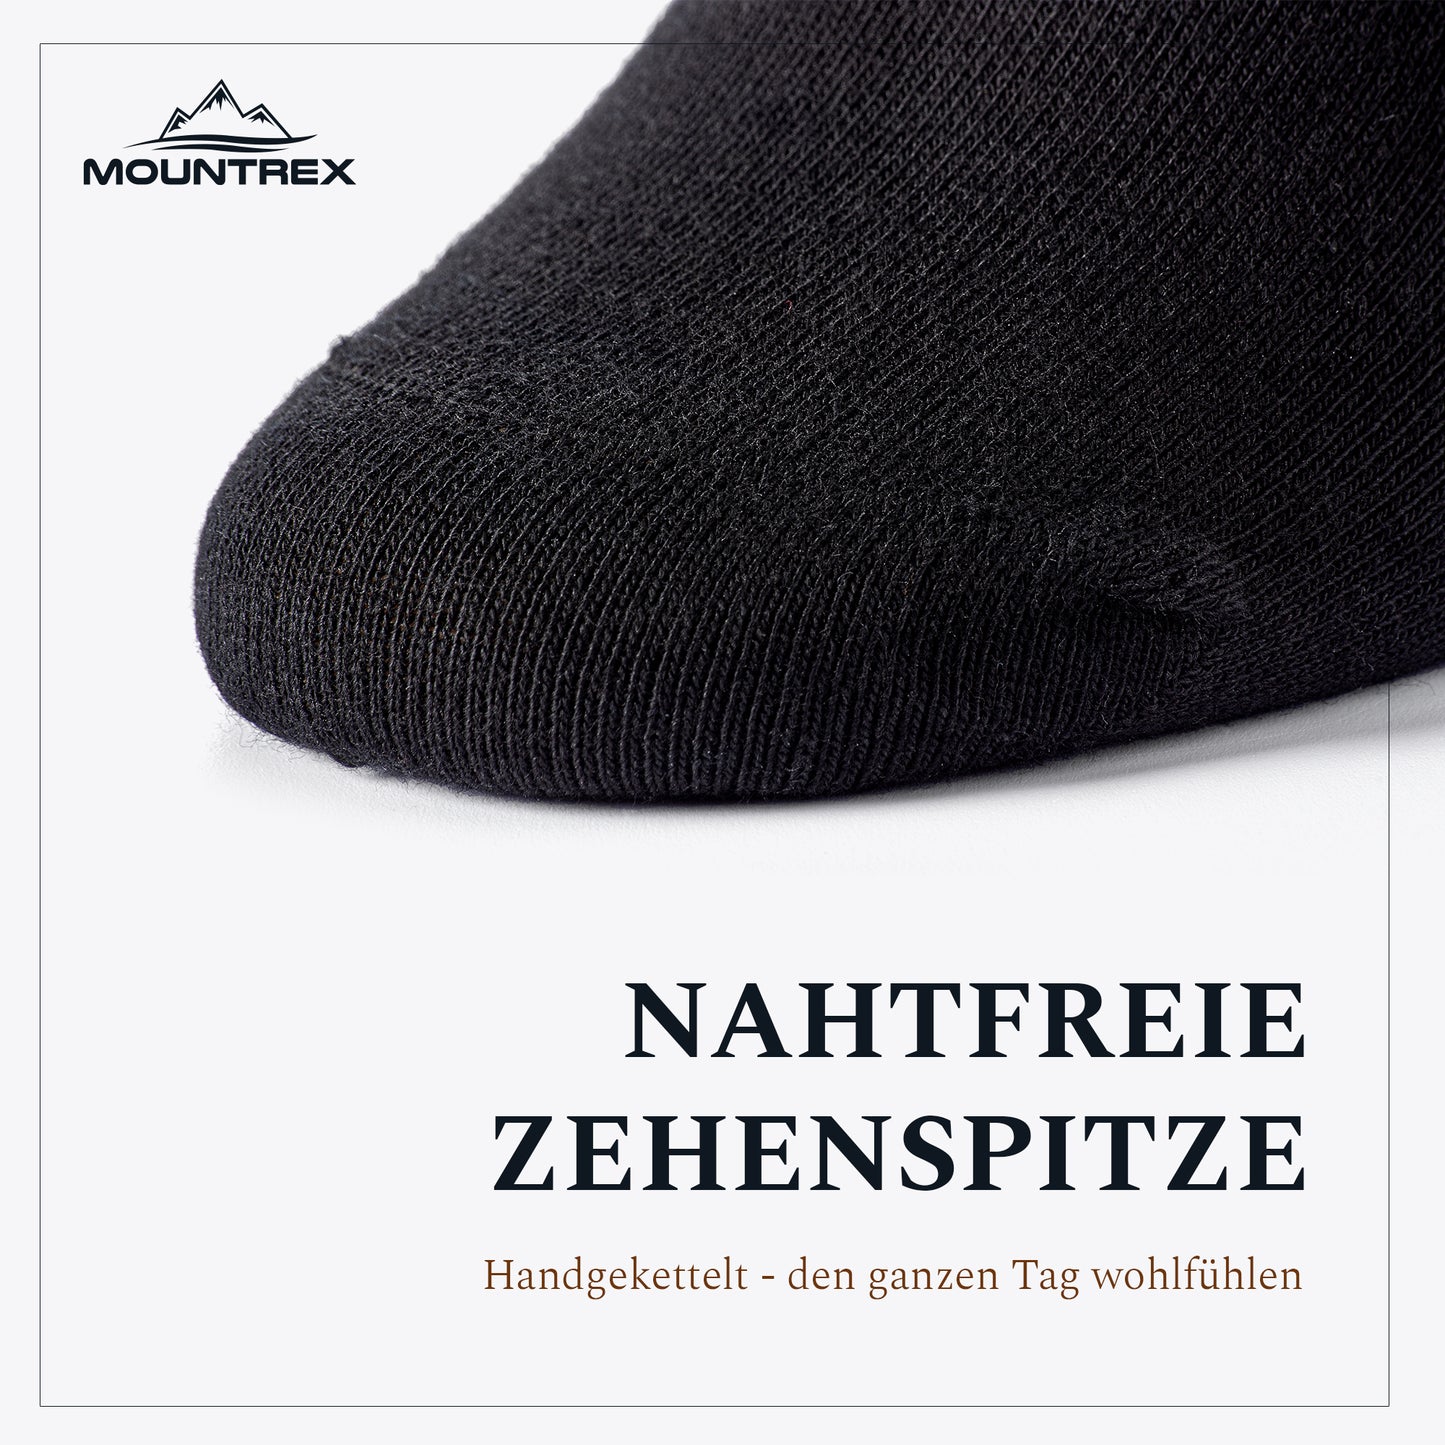 Business Socken Herren Damen (10 Paar) - Schwarz